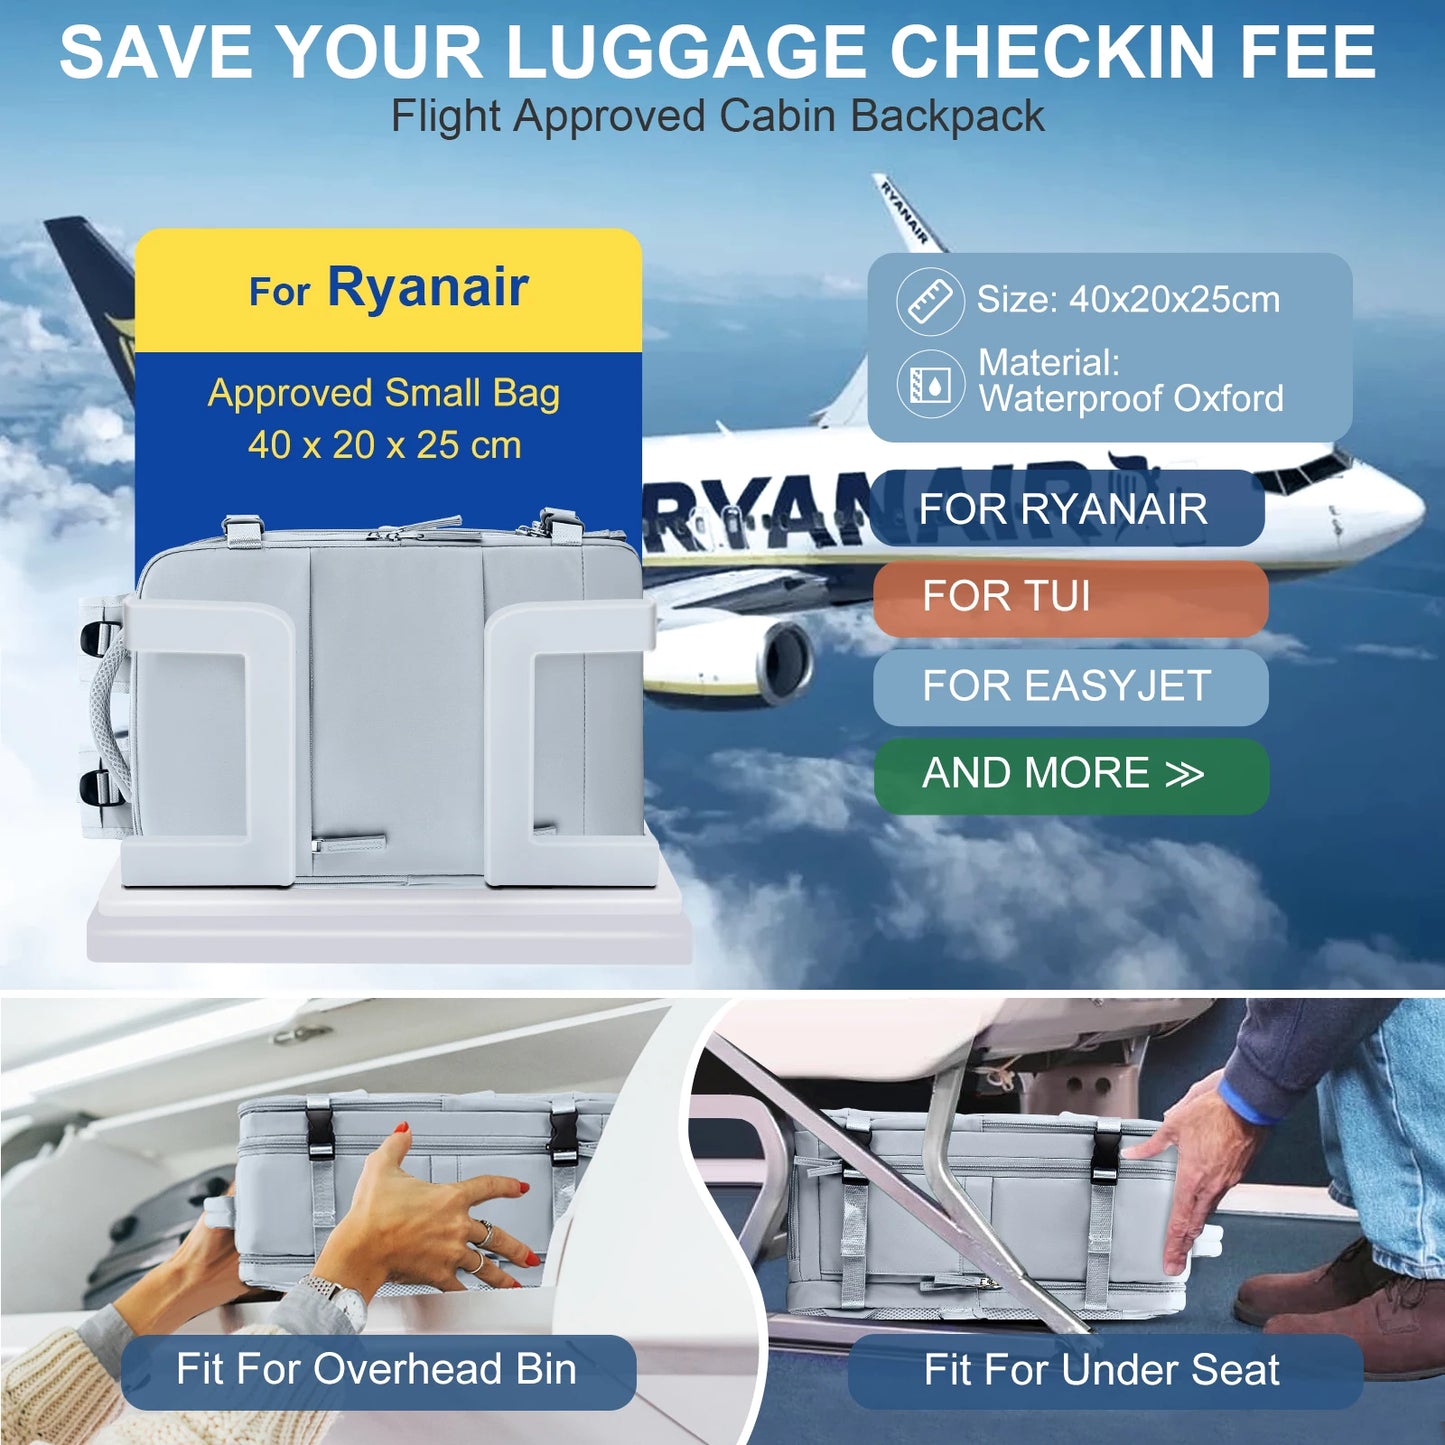 Ryggsekk 40x20x25 Ryanair, reise ryggsekk for kvinner menn, personlig vare på ryggsekk, forretningsuke av forretningsuken, forretningsukeover